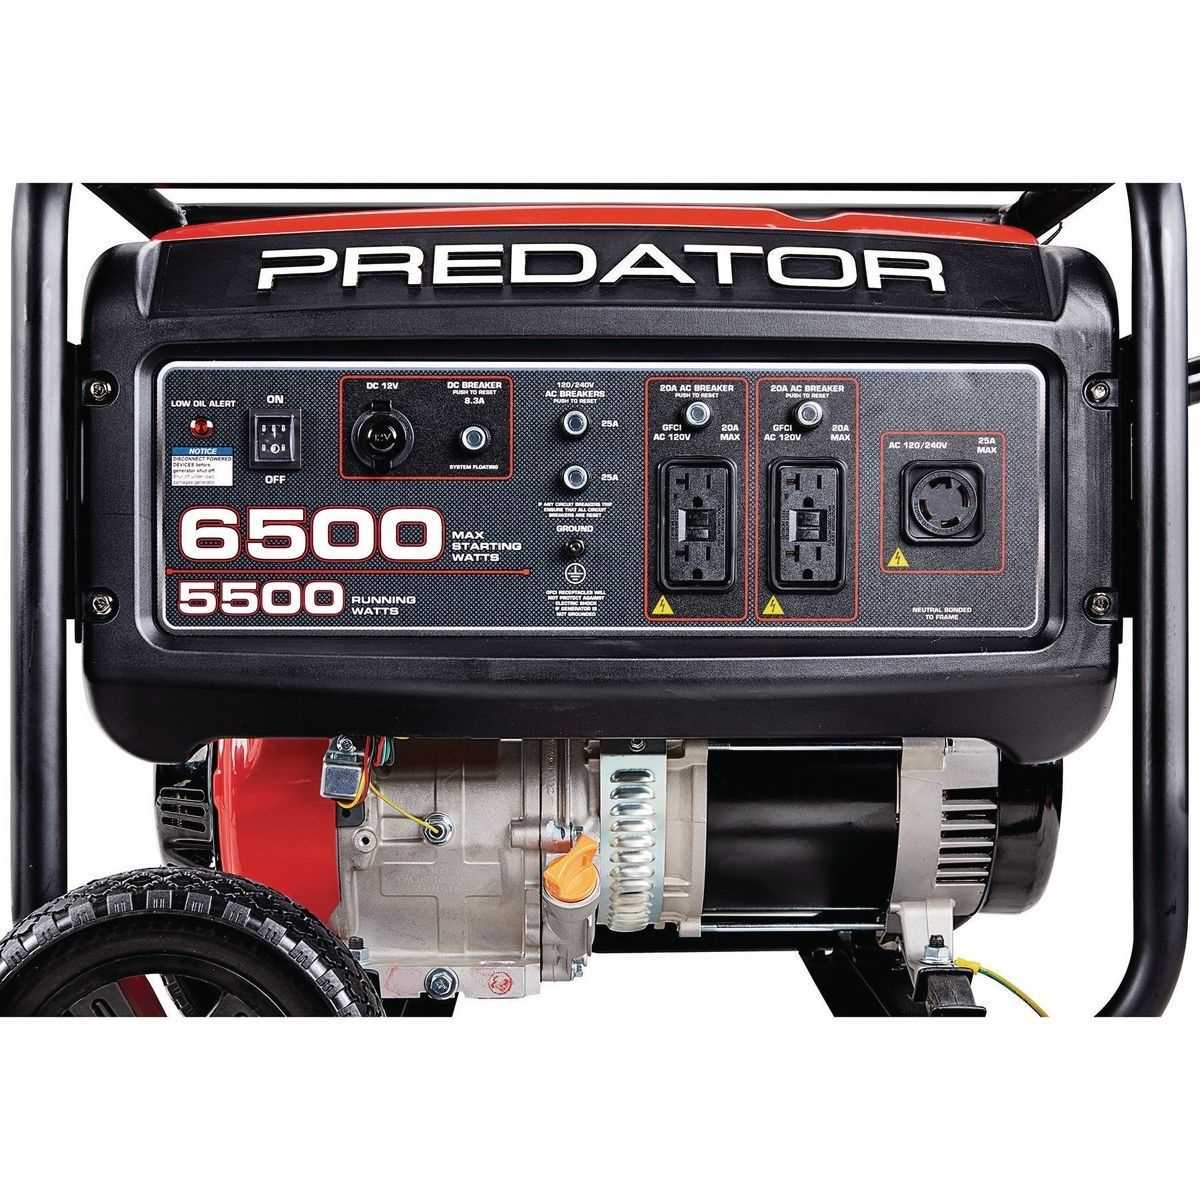 Predator 9000 generator wiring diagram